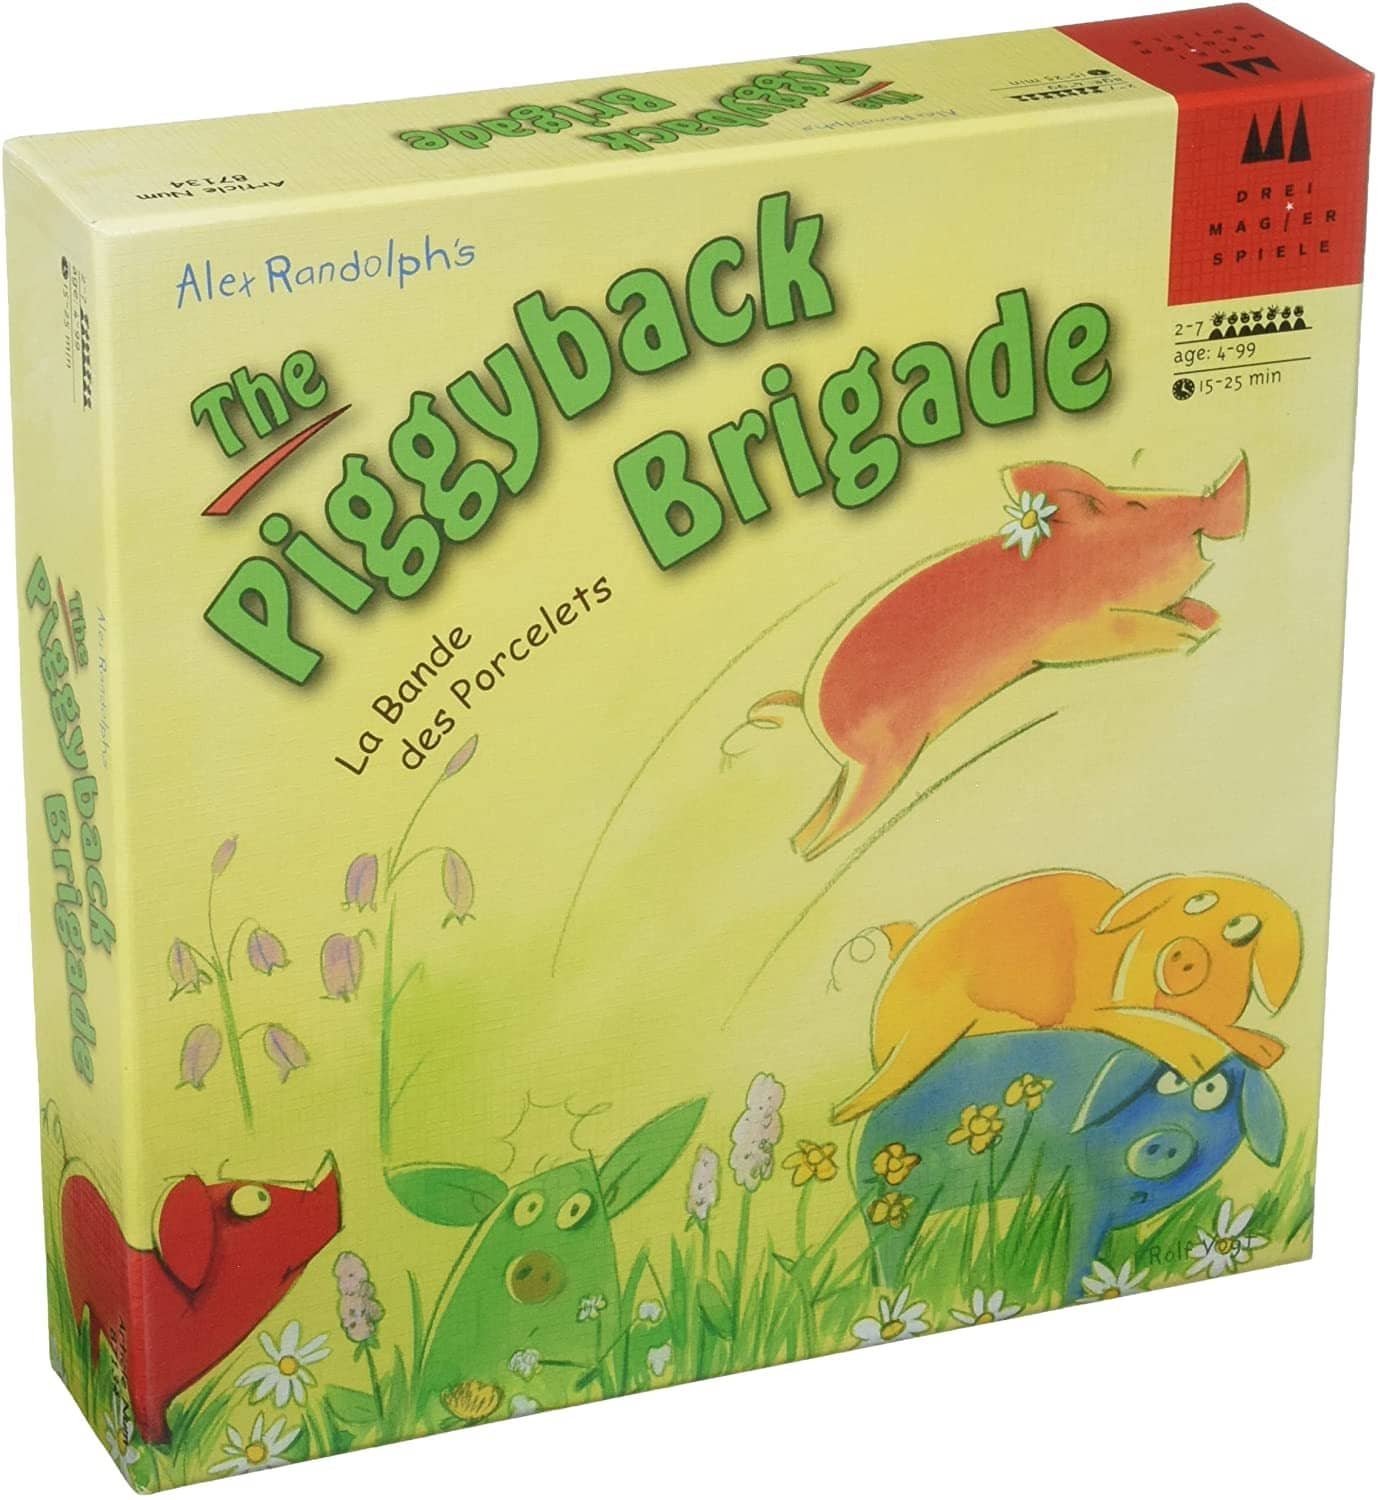 The Piggyback Brigade Game-Kidding Around NYC